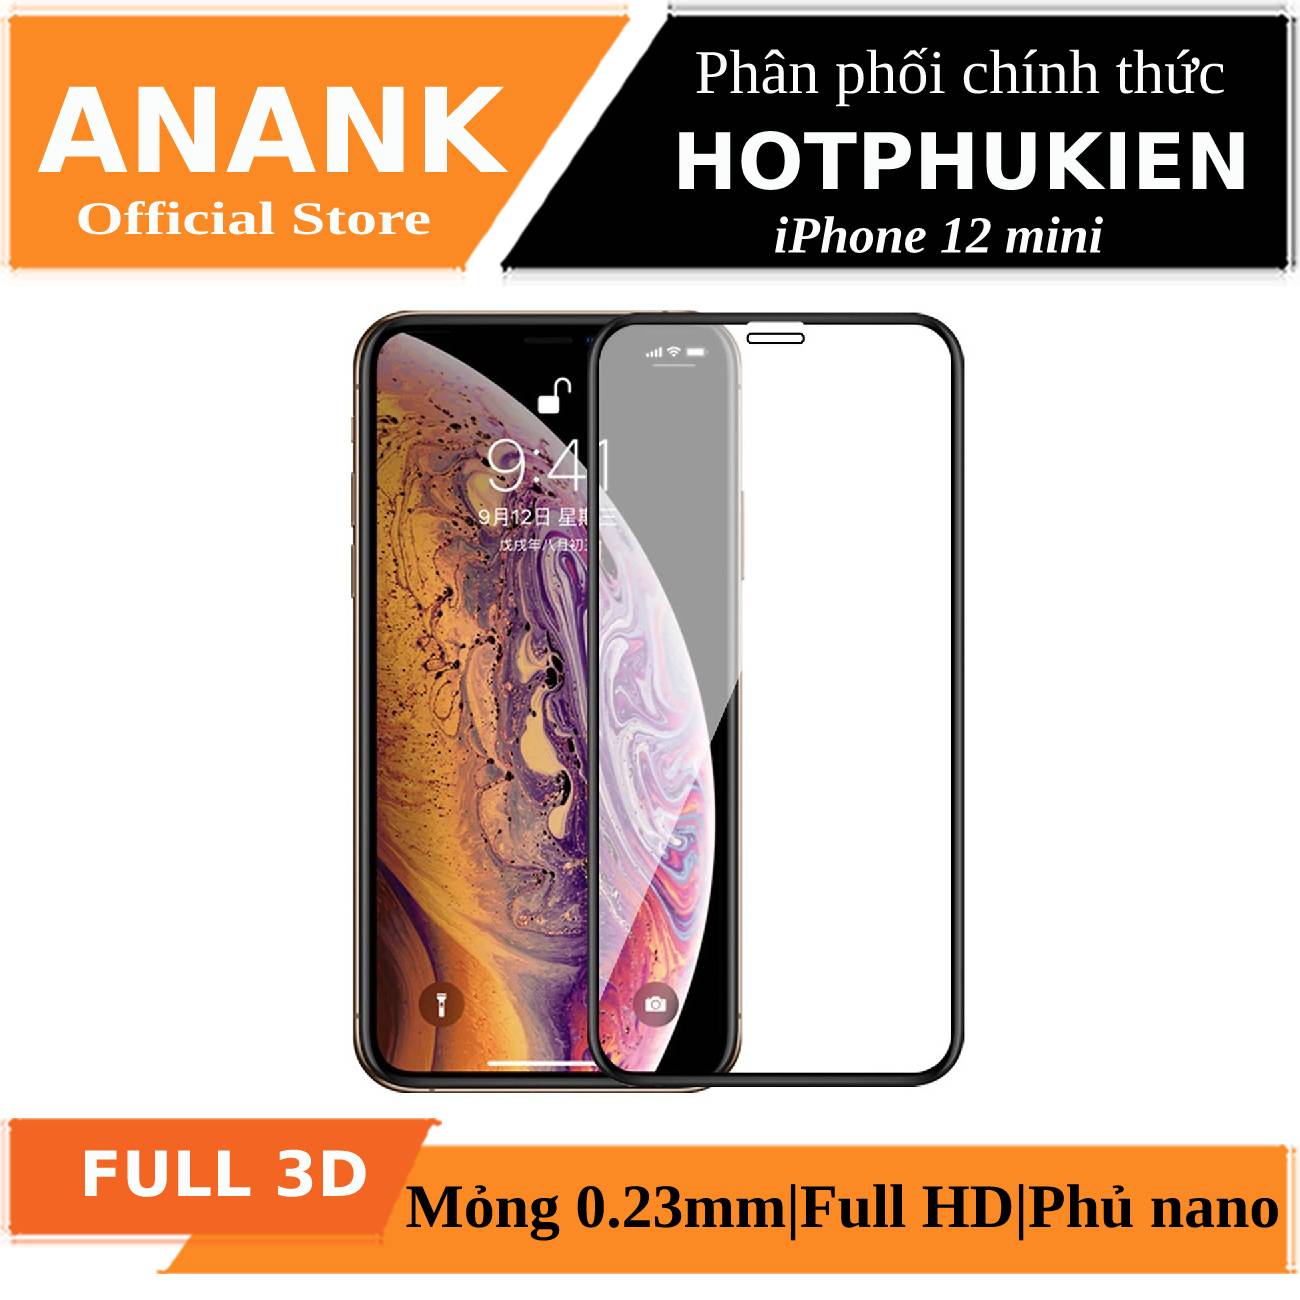 Miếng dán kính cường lực Full 3D cho iPhone 12 Mini (5.4 inch) chính hãng Anank Nhật Bản